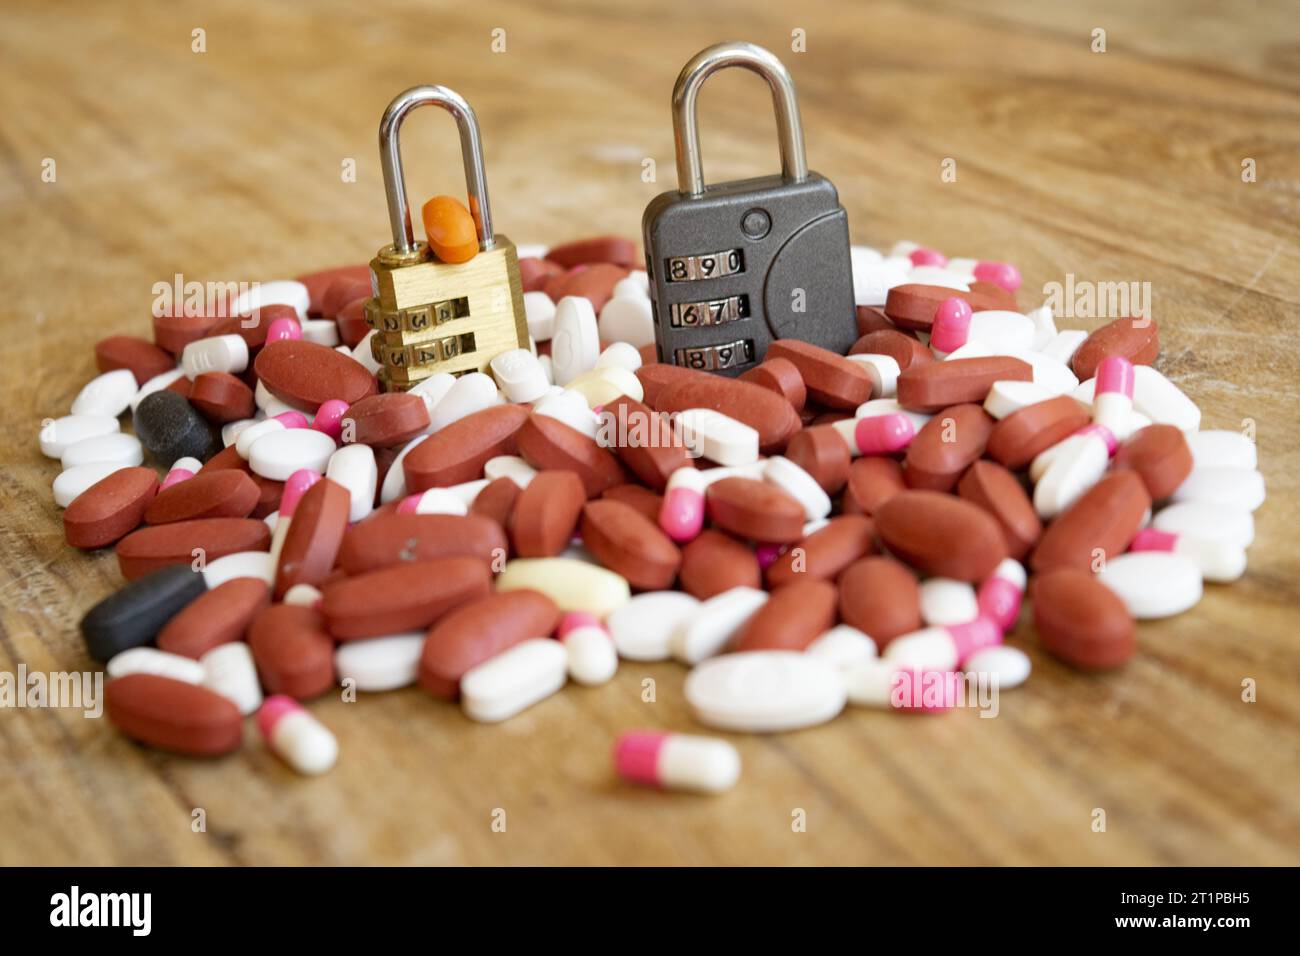 concept de sécurité des soins de santé avec deux serrures et un tas de pilules Banque D'Images